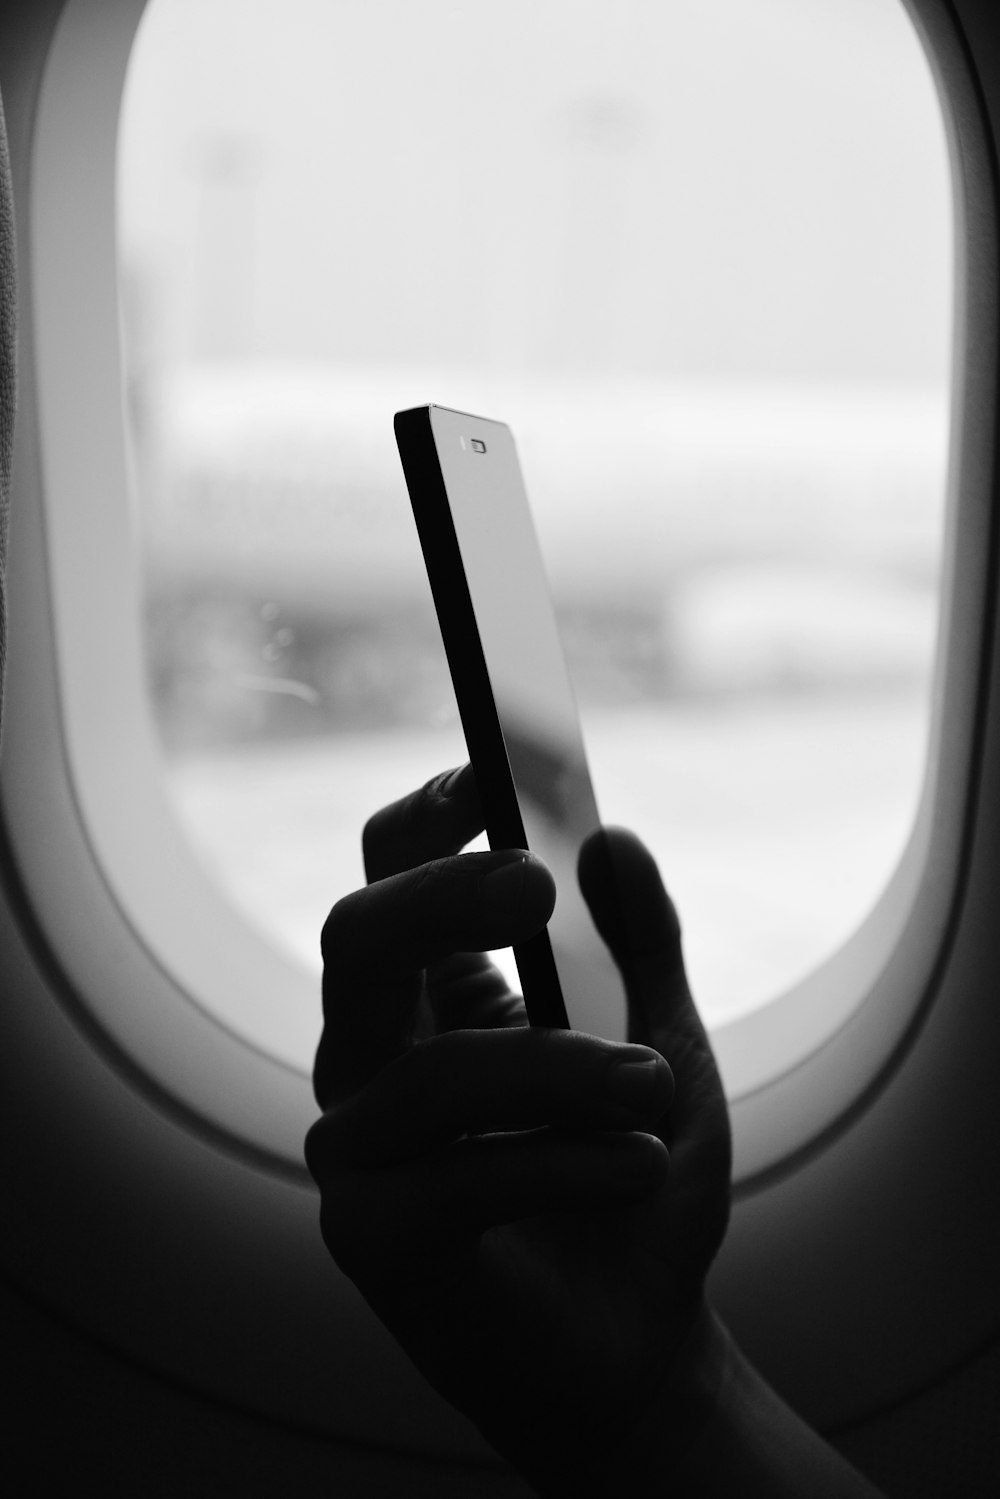 Fotografía en escala de grises de una persona sosteniendo un teléfono inteligente al lado de la ventana